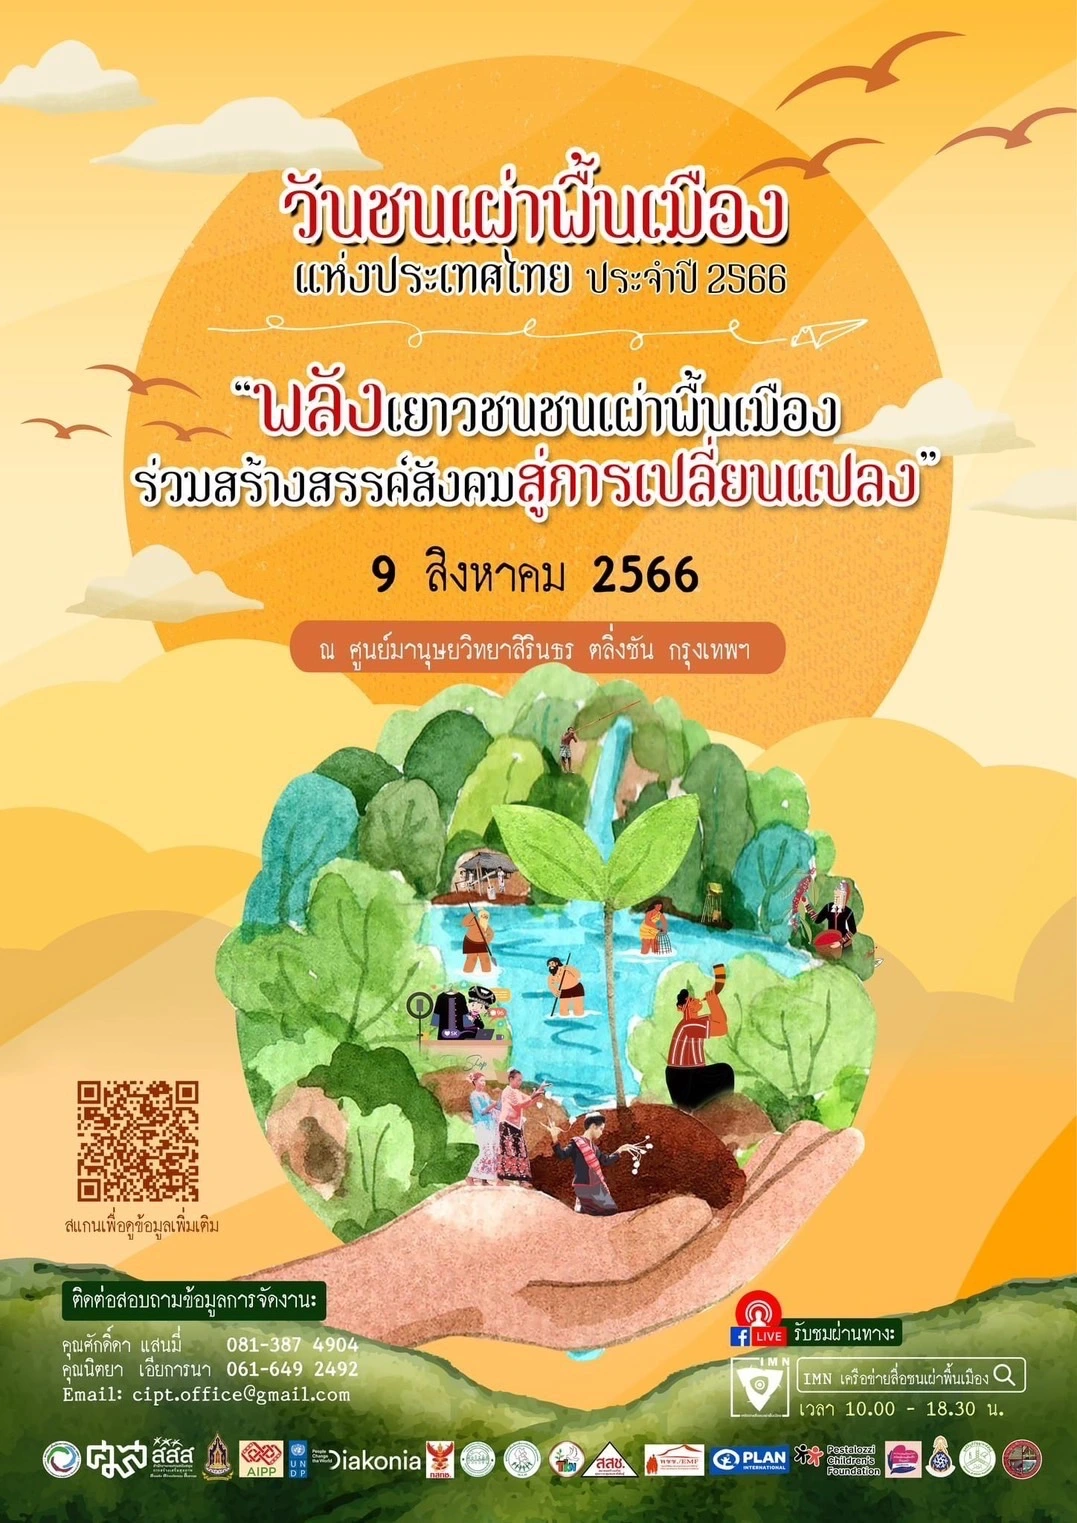 เชิญชวนร่วมงาน - กิจกรรมรณรงค์และเฉลิมฉลองเนื่องในวันสากลชนเผ่าพื้นเมืองโลกและวันชนเผ่าพื้นเมืองแห่งประเทศไทย (International Day of the World's Indigenous Peoples) วันที่ 9 สิงหาคม 2566 ภายใต้ธีมงาน “พลังเยาวชนชนเผ่าพื้นเมือง ร่วมสร้างสรรค์สังคมสู่การเปลี่ยนแปลง” ณ ศูนย์มานุษยวิทยาสิรินธร ตลิ่งชัน กรุงเทพฯ พบกับ--> -กิจกรรมสานฝันและความหวังของเด็กและเยาวชนชนเผ่าพื้นเมือง: “เยาวชนชนเผ่าพื้นเมืองไทย ร่วมสานใจเสริมพลังให้กล้าแกร่ง ร่วมเปลี่ยน แปลงสร้างสังคมที่ยั่งยืน” -เยี่ยมชมนิทรรศการและชิมอาหารชนเผ่าพื้นเมือง -เสวนาสาธารณะ เรื่อง “สานพลังความร่วมมือภาคีสนับสนุนการจัดการ พื้นที่คุ้มครองวิถีชีวิตกลุ่มชาติพันธุ์และส่งเสริมสิทธิชนเผ่าพื้นเมือง” -กิจกรรมรณรงค์และเฉลิมฉลองเนื่องในวันสากลชนเผ่าพื้นเมืองโลกและวันชนเผ่าพื้นเมืองแห่งประเทศไทย -เปิดพื้นที่นำเสนออัตลักษณ์และวิถีวัฒนธรรมชนเผ่าพื้นเมืองร่วมสมัย เช่น นวัตกรรมอาหารชนเผ่าพื้นเมือง การแสดงชุดแต่งกายชนเผ่าพื้นเมือง และการแสดงศิลปะดนตรีและวัฒนธรรมร่วมสมัย สามารถติดตามรายละเอียดกิจกรรมและเนื้อหาที่เกี่ยวข้องกับงาน ได้ทางเพจ IMN เครือข่ายสื่อชนเผ่าพื้นเมือง และ เครือข่ายชนเผ่าพื้นเมืองแห่งประเทศไทย ------------------------------- ติดต่อประสานงานและสอบถามข้อมูลเพิ่มเติมเกี่ยวกับการจัดงาน: สำนักงานสภาชนเผ่าพื้นเมืองประเทศไทย (สชพ.) c/o สมาคมศูนย์รวมการศึกษาและวัฒนธรรมของชาวไทยภูเขาในประเทศไทย (IMPECT) เลขที่ 252 ม.2 ต.สันทรายน้อย อ.สันทราย จ.เชียงใหม่ 50210 อีเมล์: cipt.office@gmail.com โดยติดต่อได้ที่: - นายศักดิ์ดา แสนมี่ เลขาธิการสภาชนเผ่าพื้นเมืองแห่งประเทศไทย (สชพ.) มือถือ: 081-387 4904 อีเมล์: sakda.saenmi@gmail.com -นางนิตยา เอียการนา ผู้ประสานงานกองเลขานุการจัดงาน มือถือ: 061-649 2492 อีเมล์: nittaya.mee@gmail.com ------------------------------- #วันชนเผ่าพื้นเมือง #วันสากลชนเผ่าพื้นเมืองโลก #วันชนเผ่าพื้นเมืองแห่งประเทศไทย #IPsDay2023 #IDWIP2023 #Indigenous_Peoples_Day #IPD2023 #IMN #NIPD2023 -------------------------------